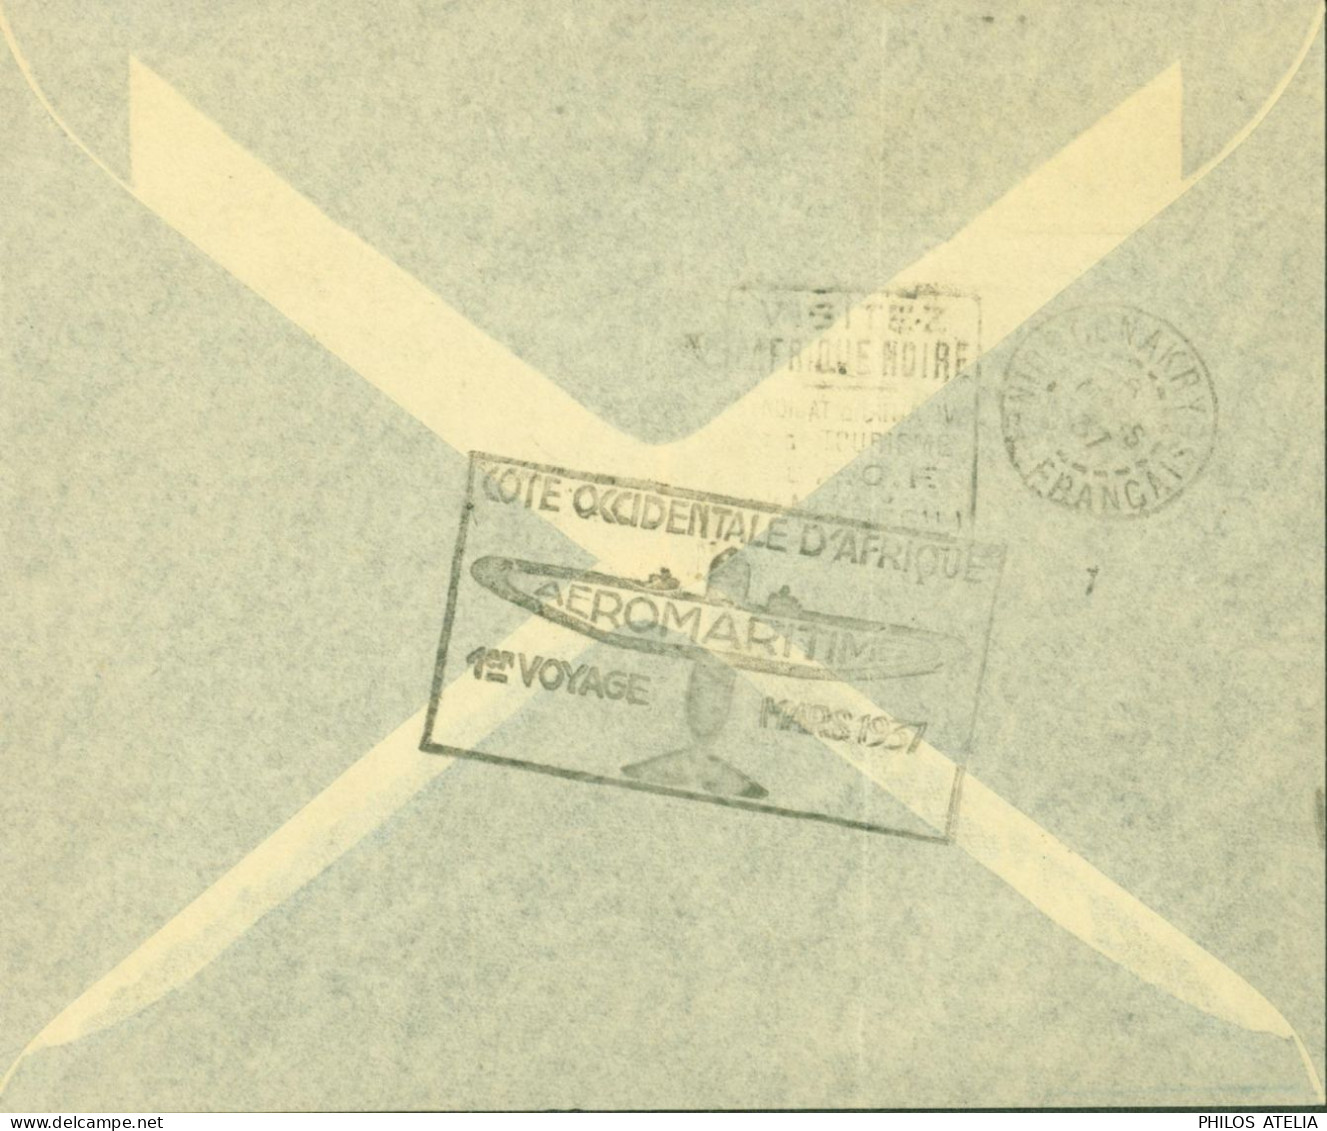 Dahomey YT N°99 101 72 Par Avion Cachet Cote Occidentale D'Afrique Aéromaritime 1er Voyage Mars 1937 CAD Cotonou 4 3 37 - Cartas & Documentos